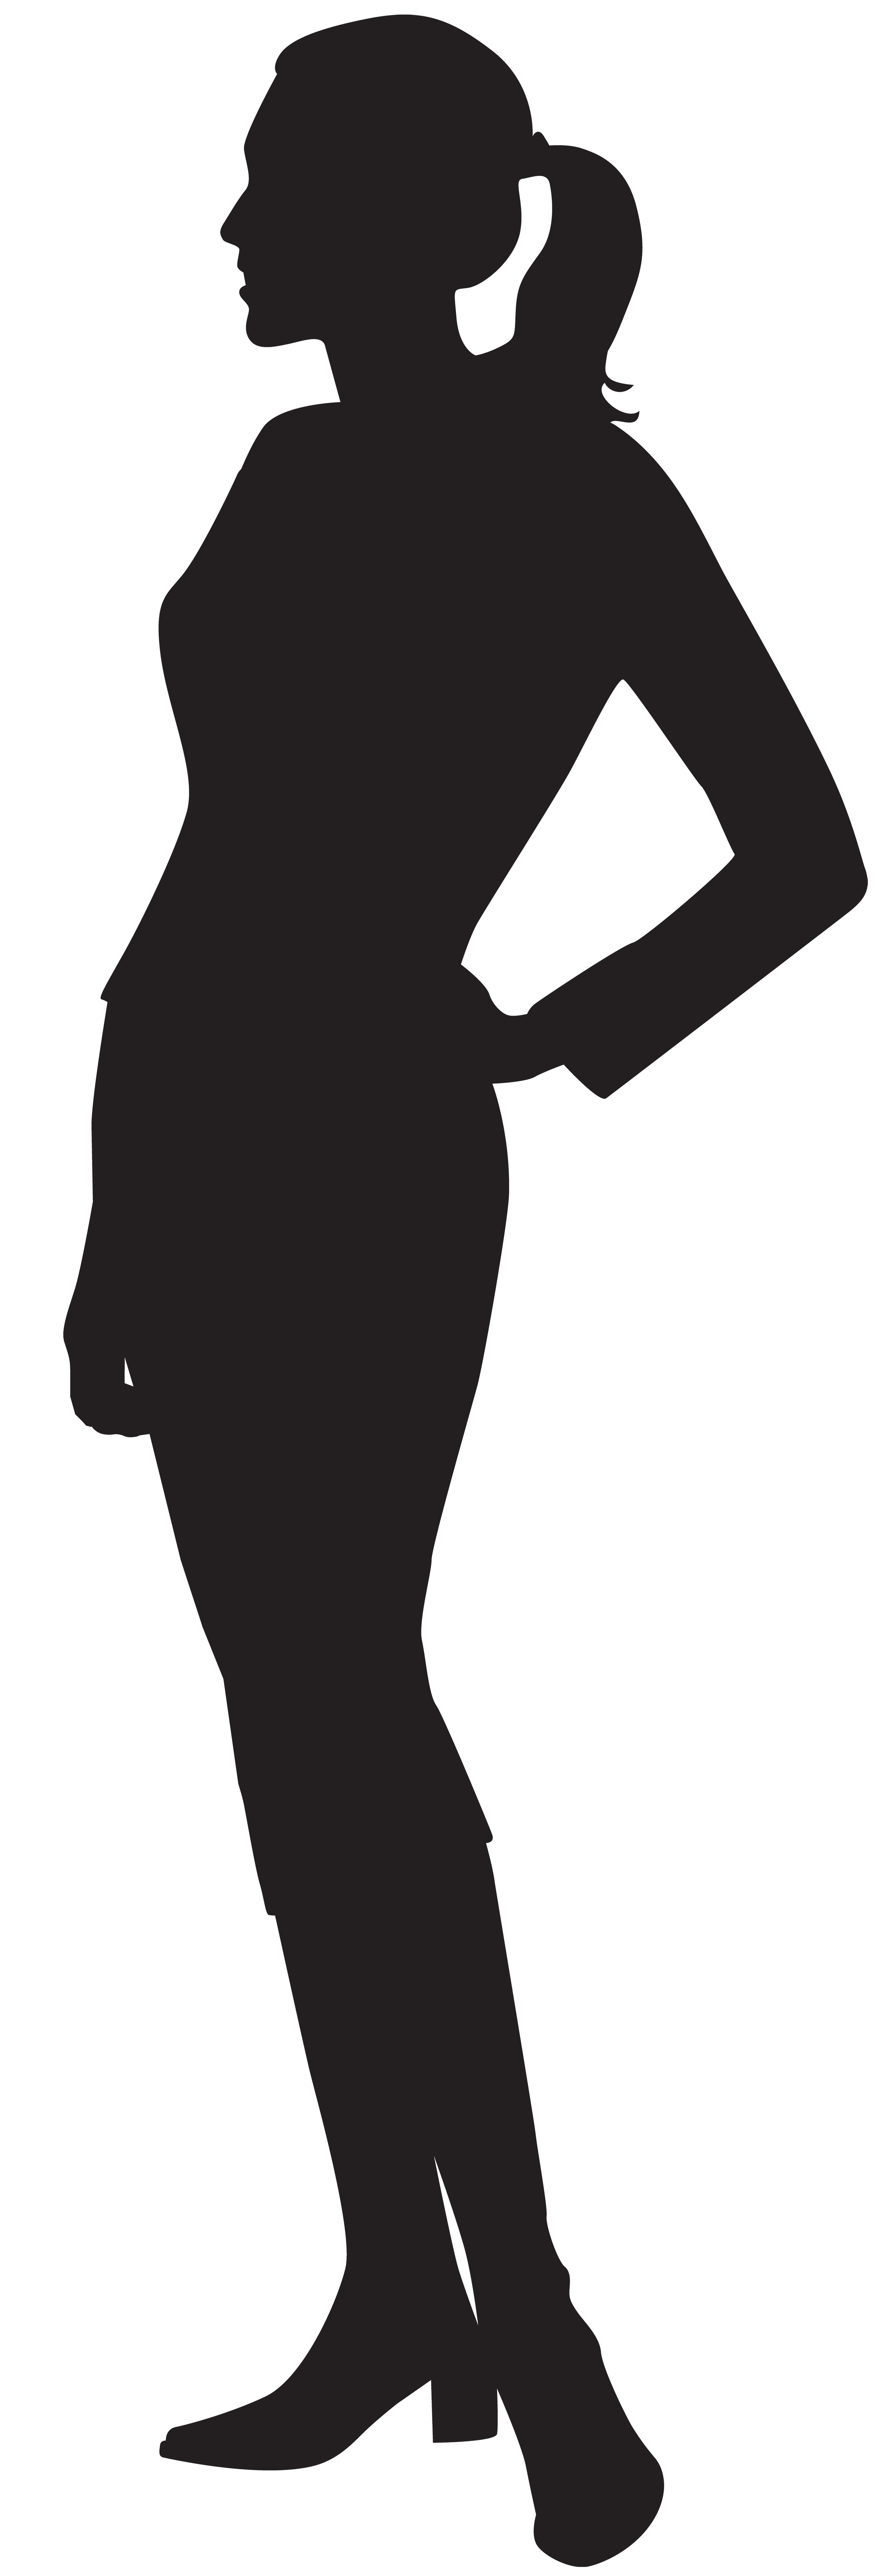 Female Body Silhouette Clip Art Silhouette Woman Body Vector